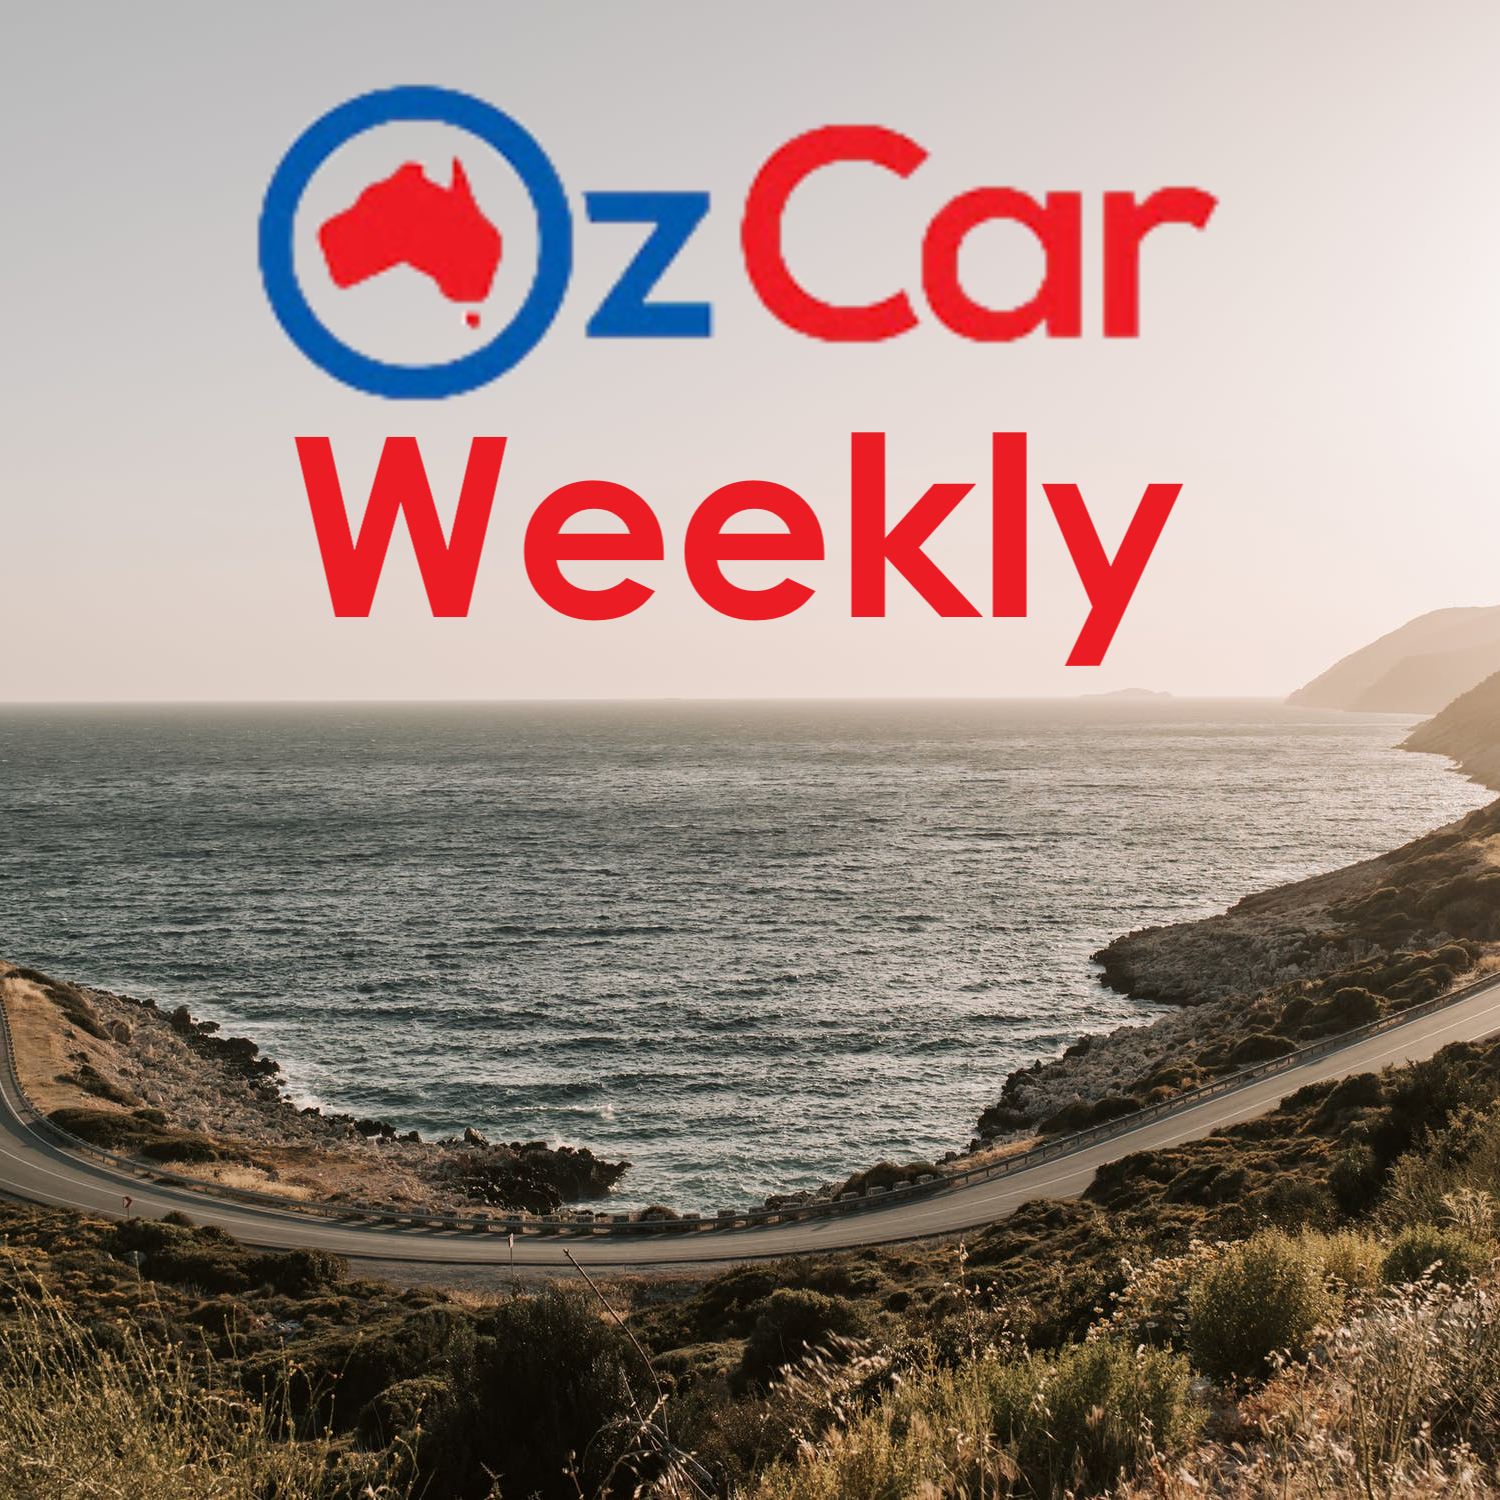 OzCar Weekly Episode 28